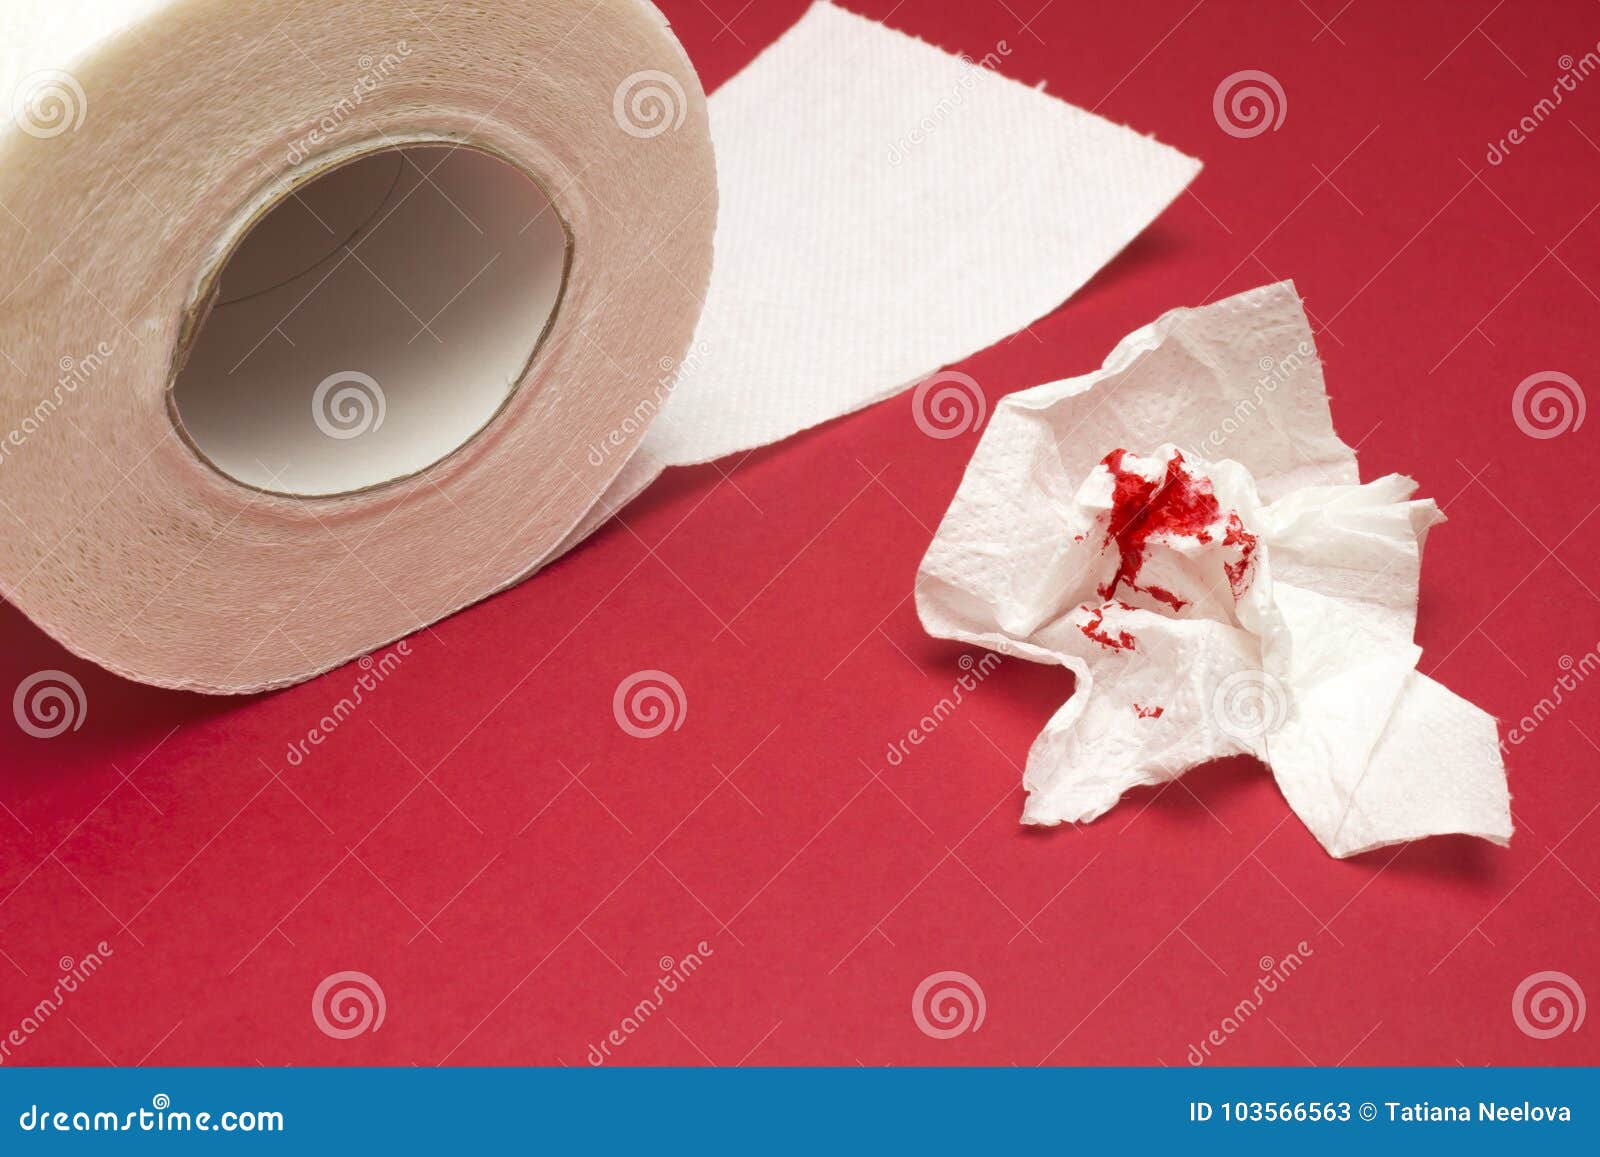 После стула крови на туалетной бумаге. Кровь на туалетной бумаге. Кровяная туалетная бумага. Капля крови на туалетной бумаге. Геморрой на туалетной бумаге.